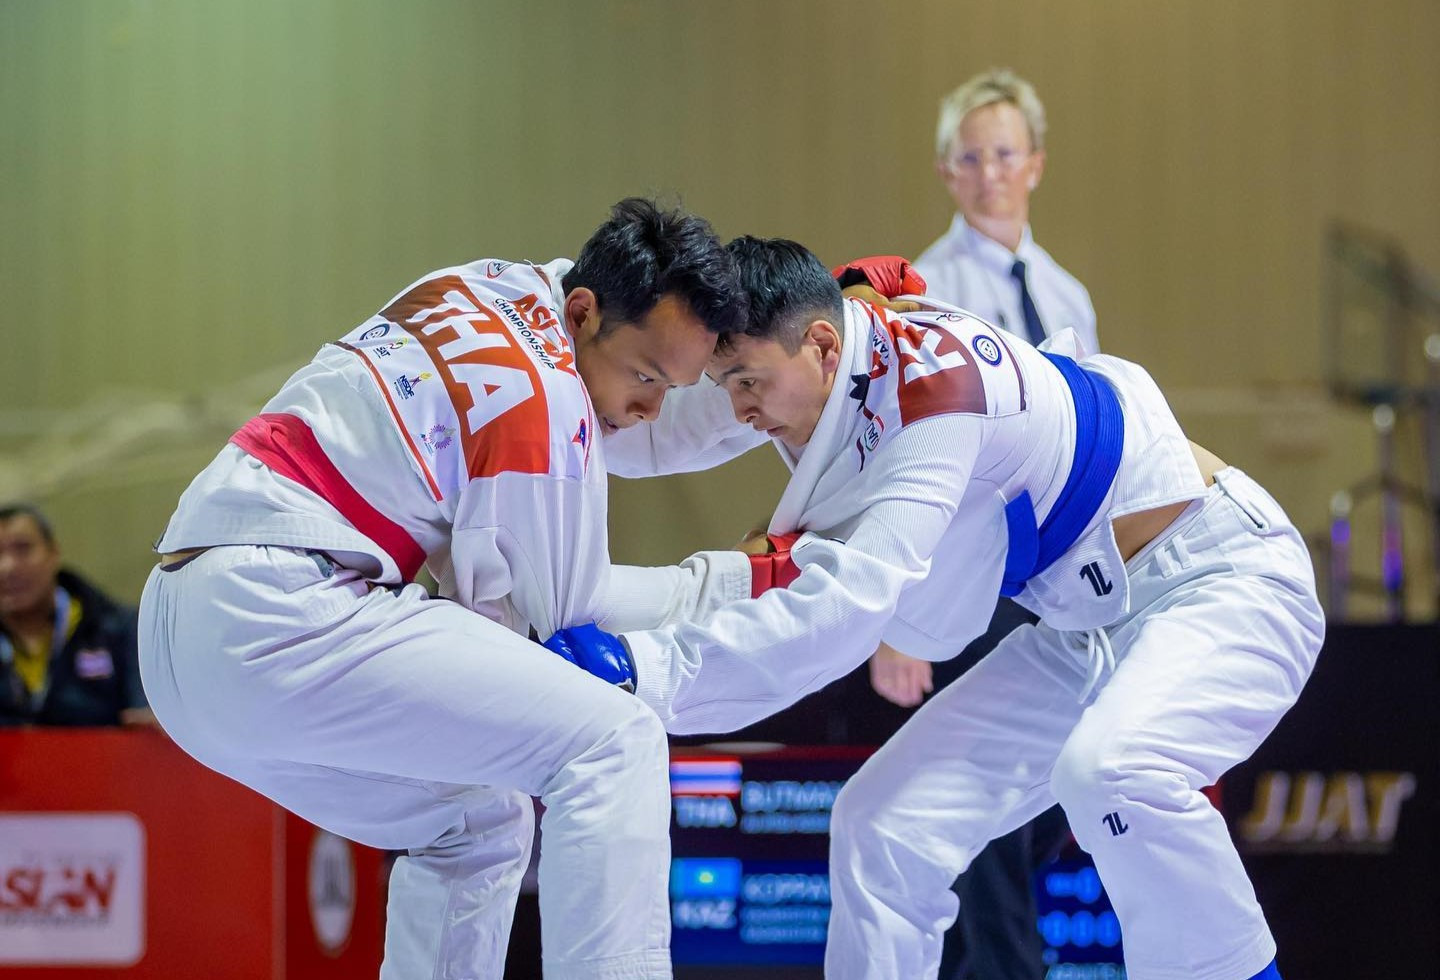 Stephan Fox feels ju-jitsu is making impressive strides to achieve IOC recognition ©JJAU